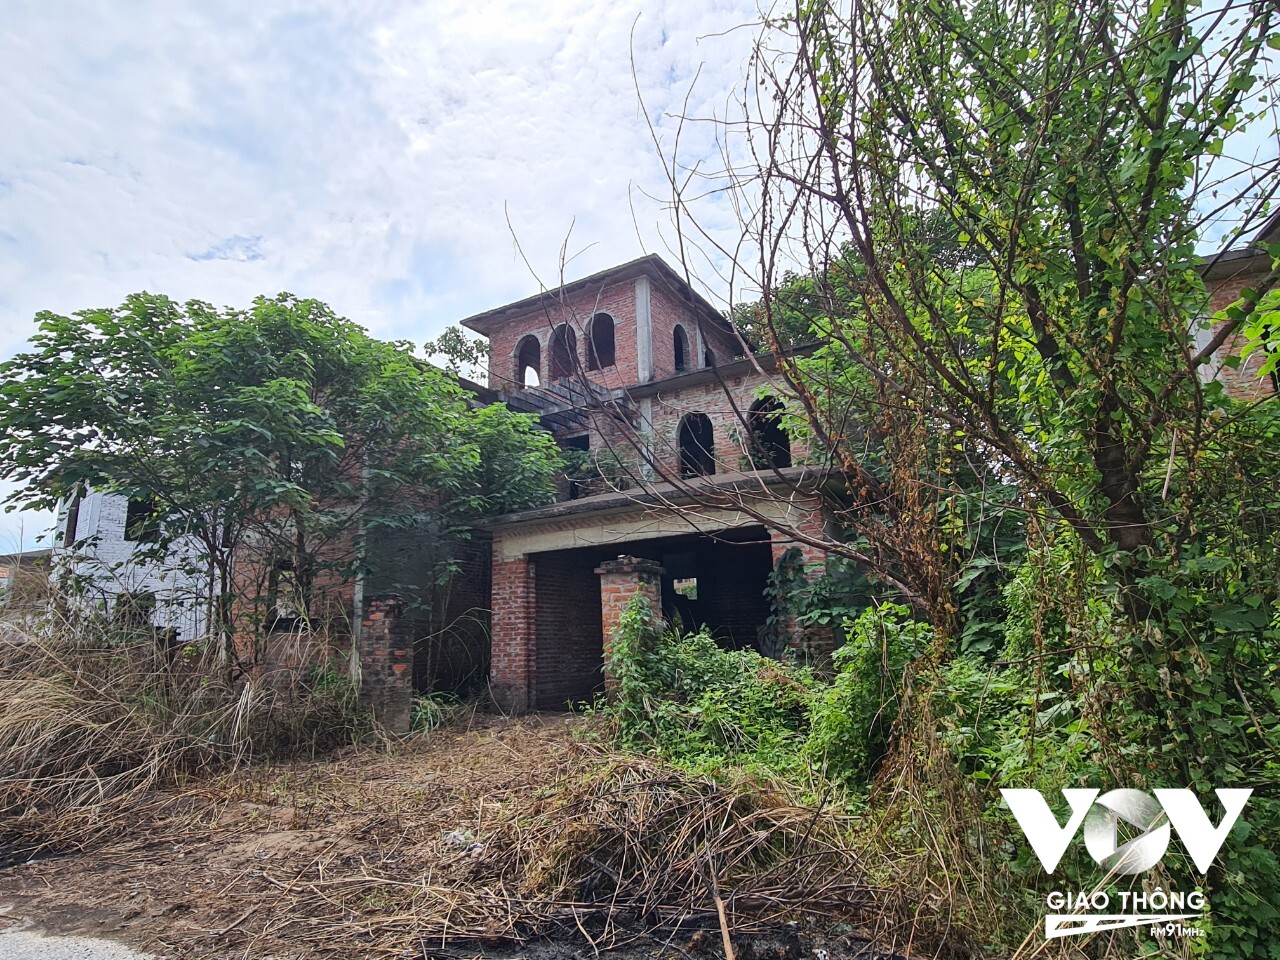 Hàng trăm ngôi biệt thự bỏ hoang, rêu phong bao phủ, xuống cấp tại Khu đô thị Nam An Khánh.